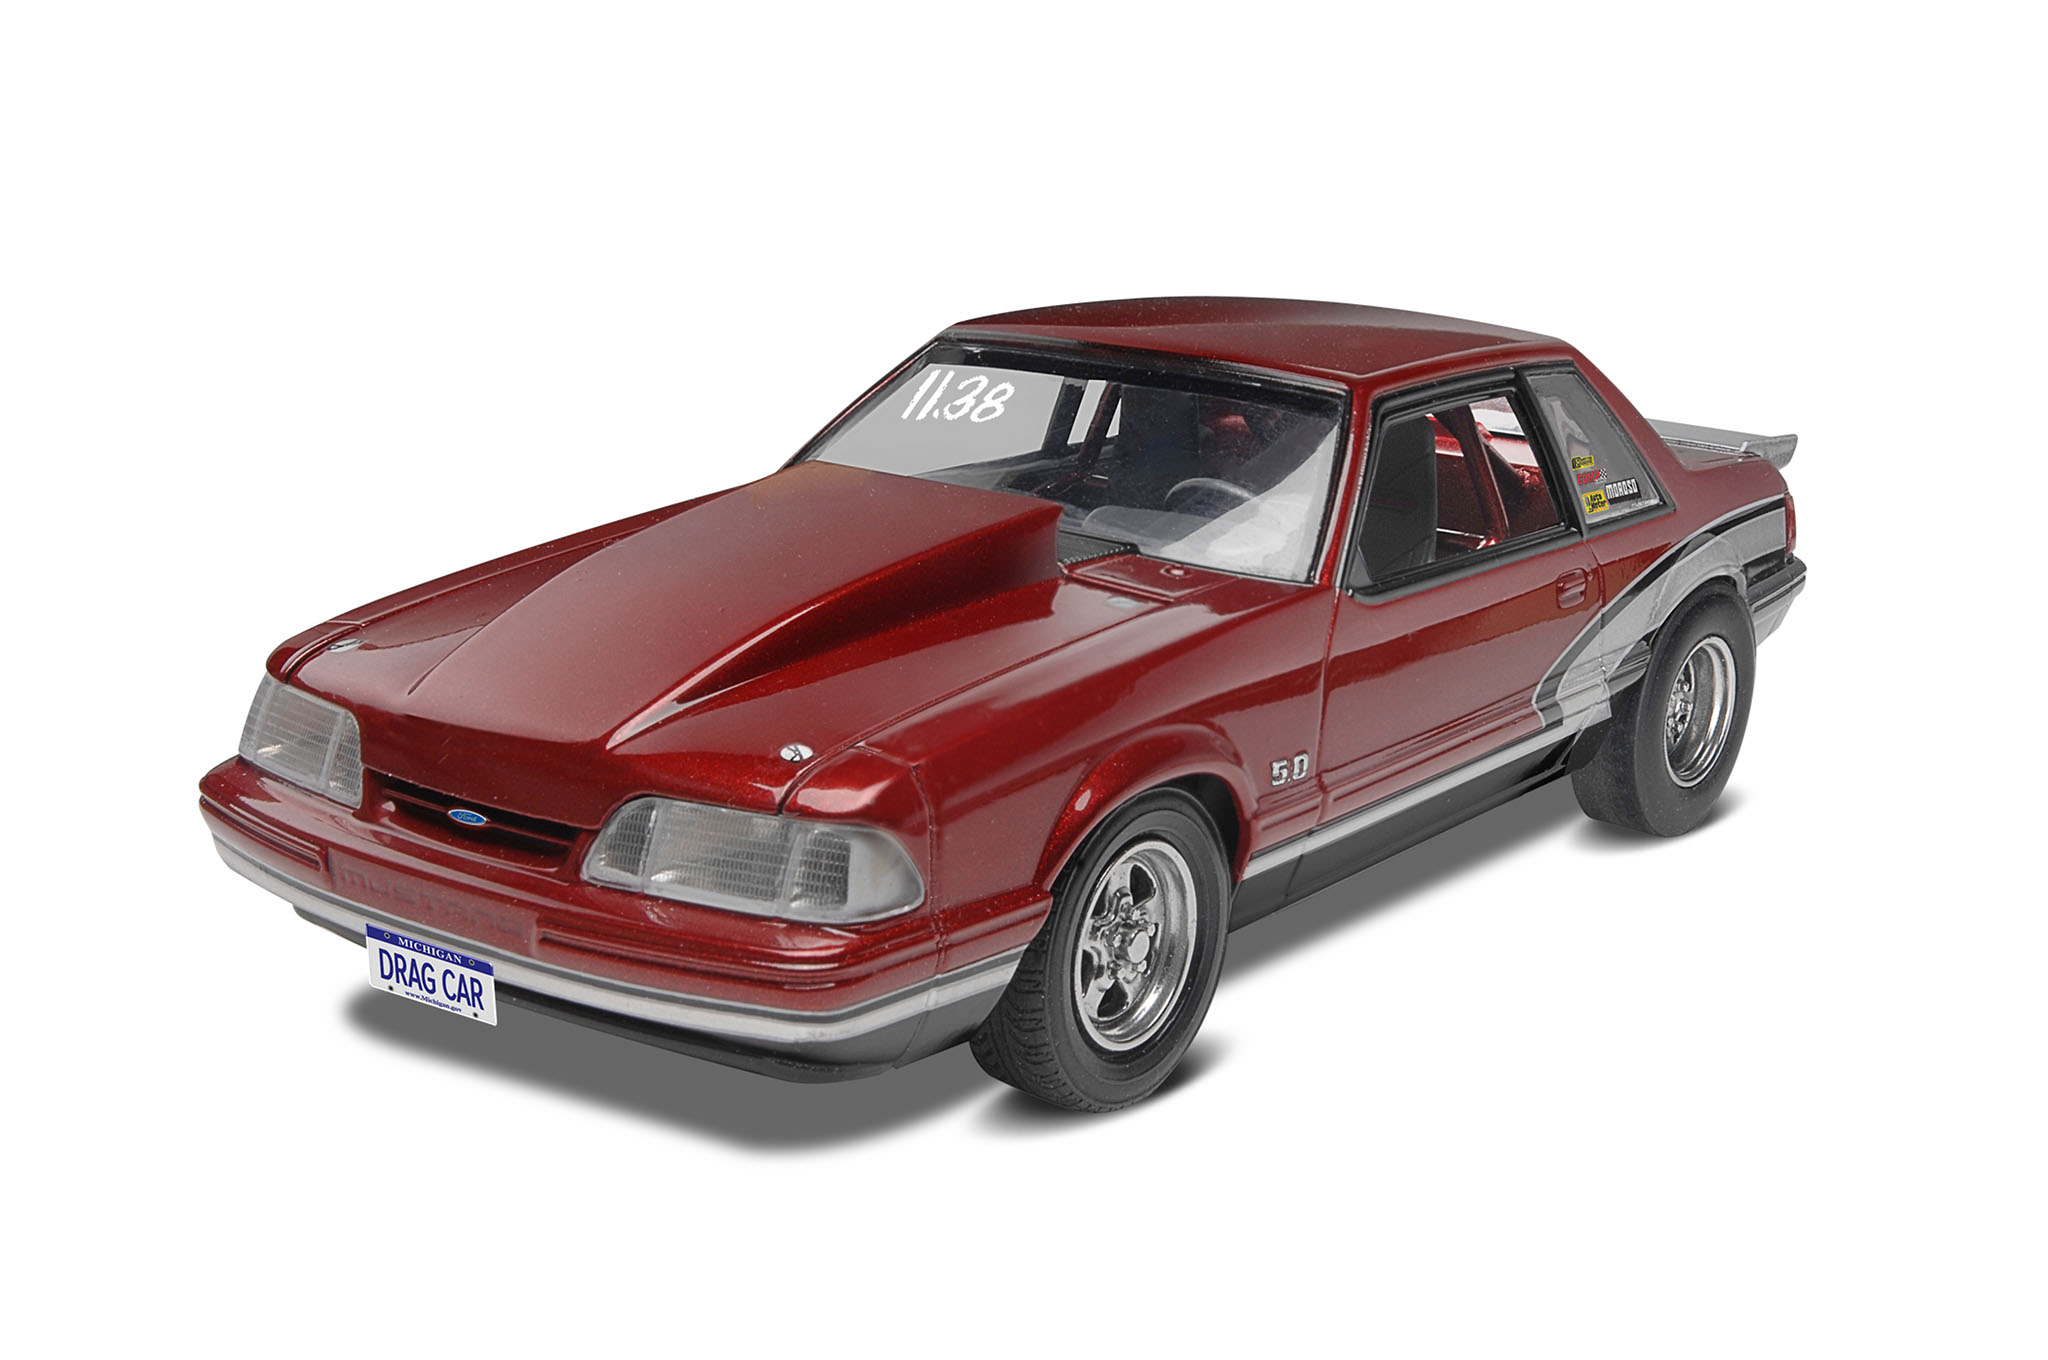 Revell '90 Mustang LX 5.0 Drag Racer in 1:24 bouwpakket